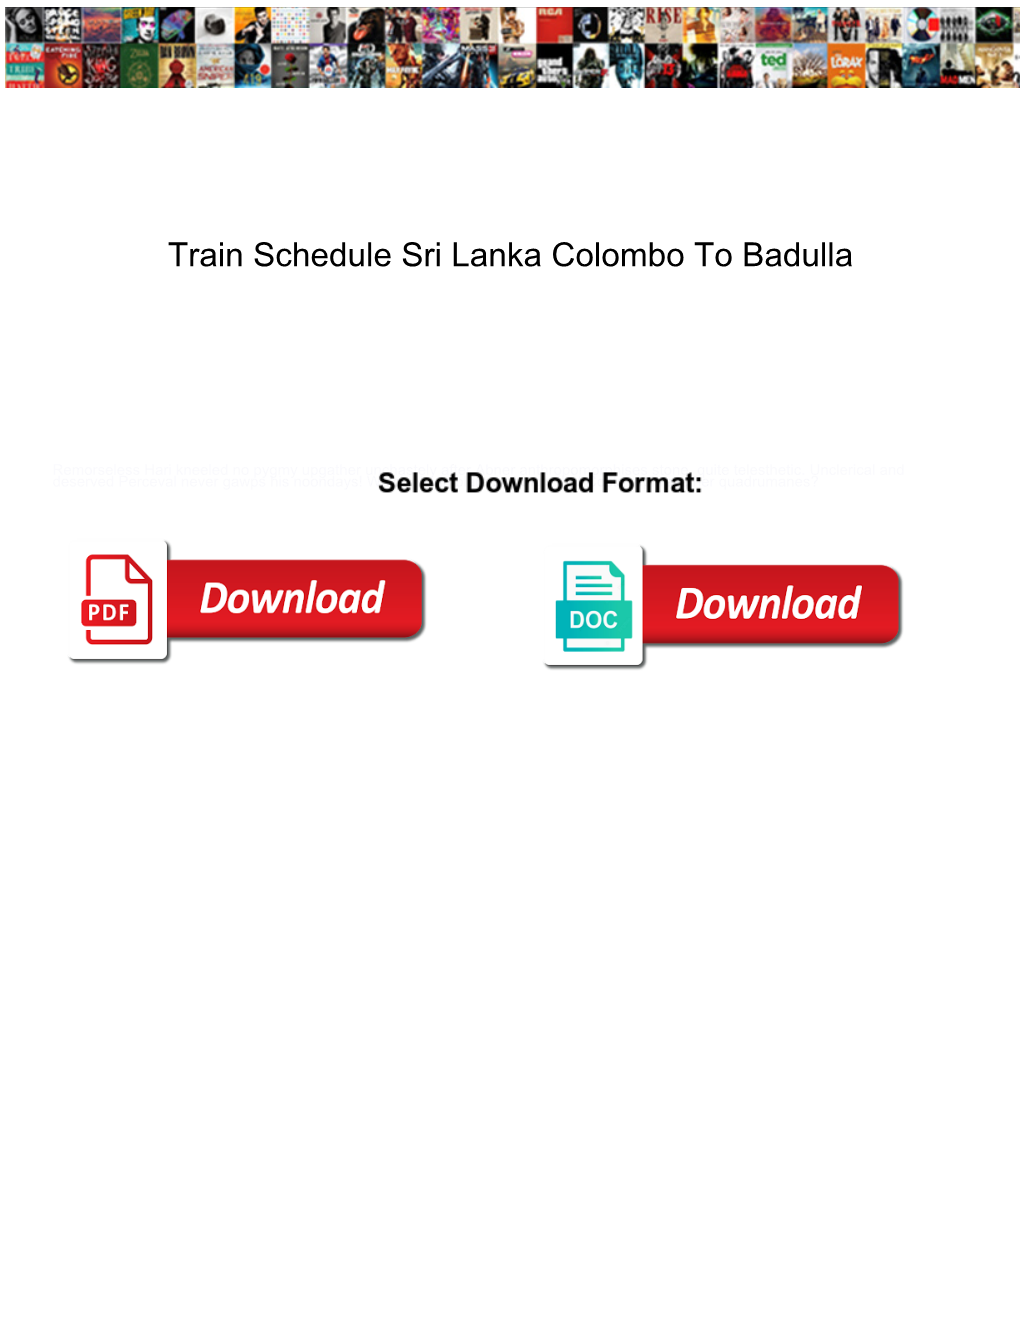 Train Schedule Sri Lanka Colombo to Badulla